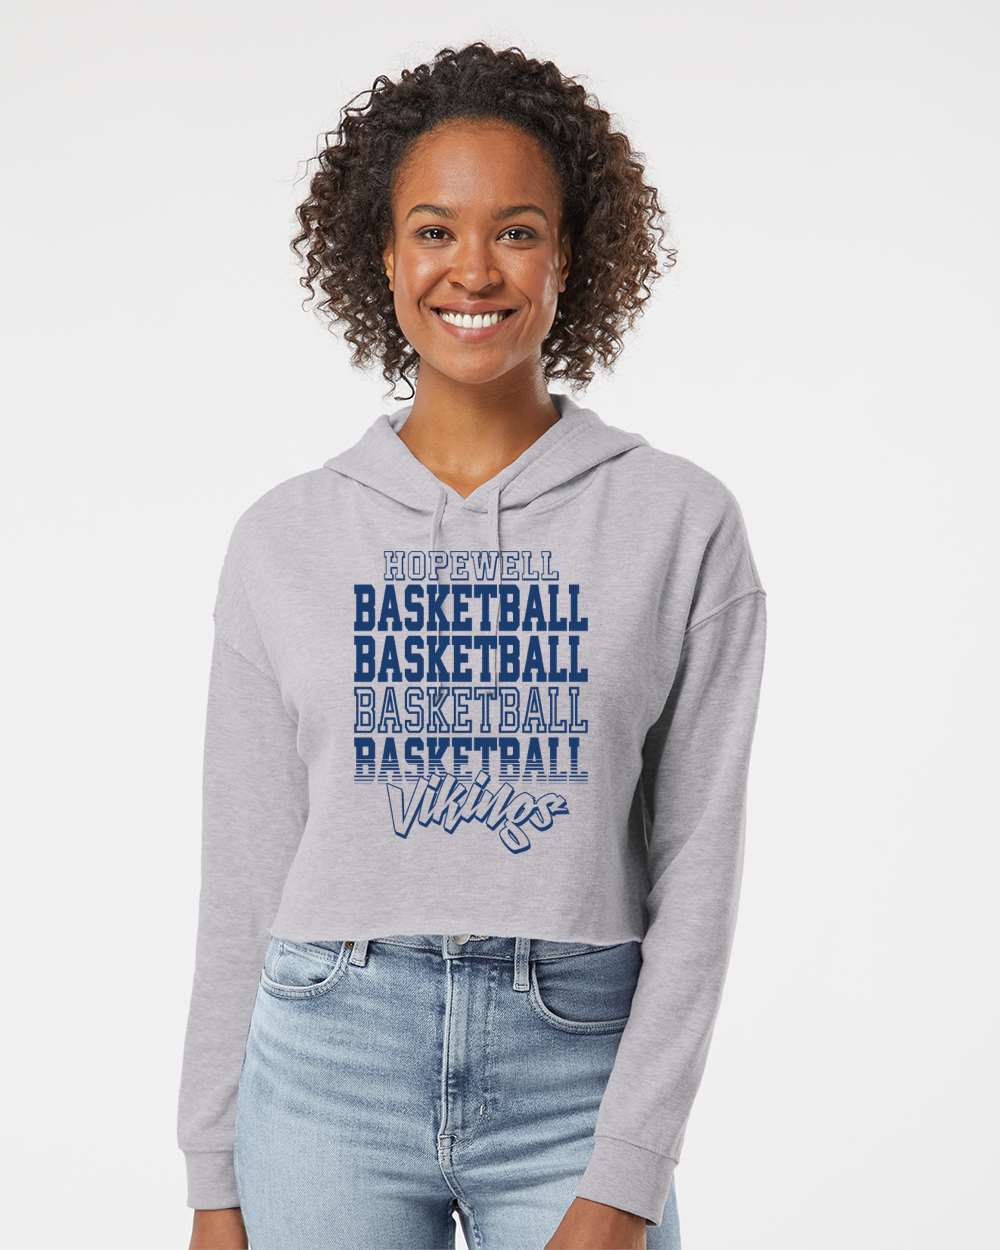 Women's Hopewell Hooded Crop Sweatshirt (Basketball Life)